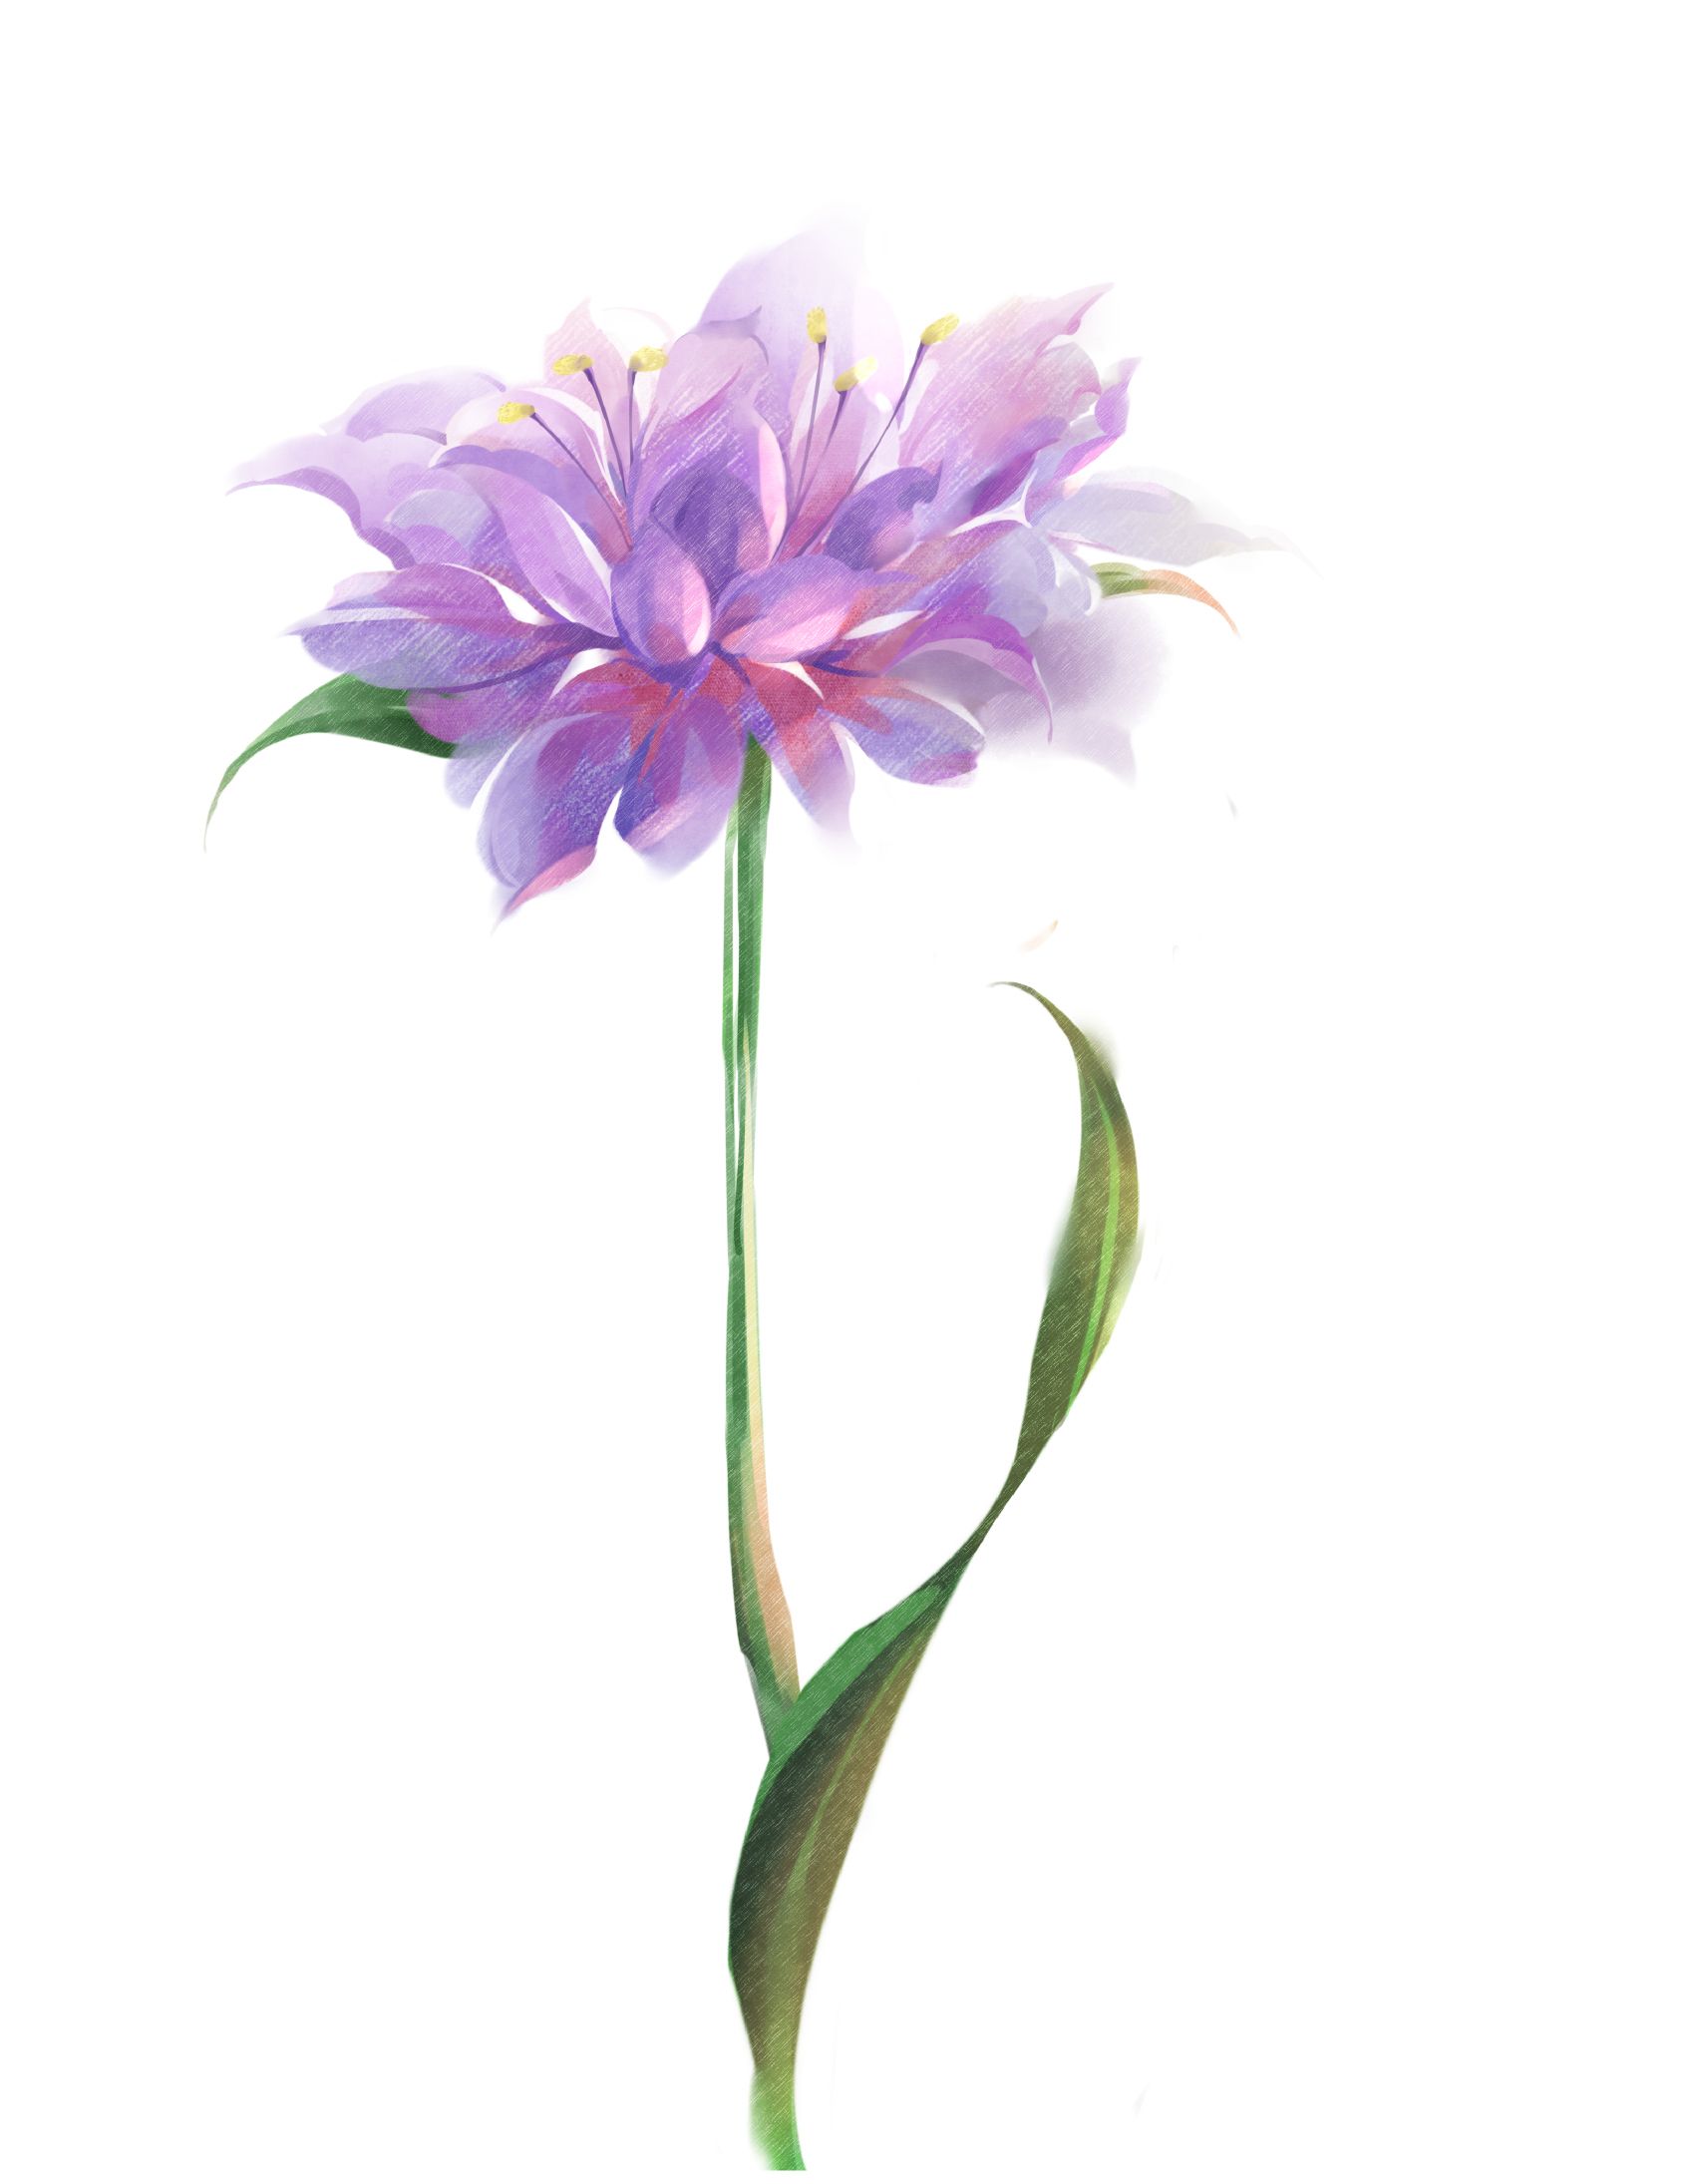 雏菊花卉植物合集 - 优动漫-动漫创作支援平台 | 优动漫PAINT绘画软件